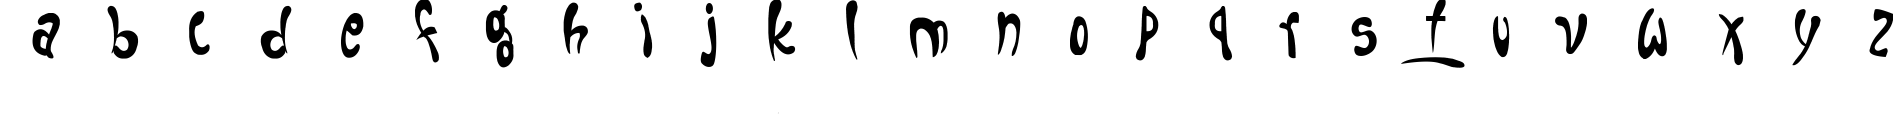 Пример написания английского алфавита шрифтом Fruitopia